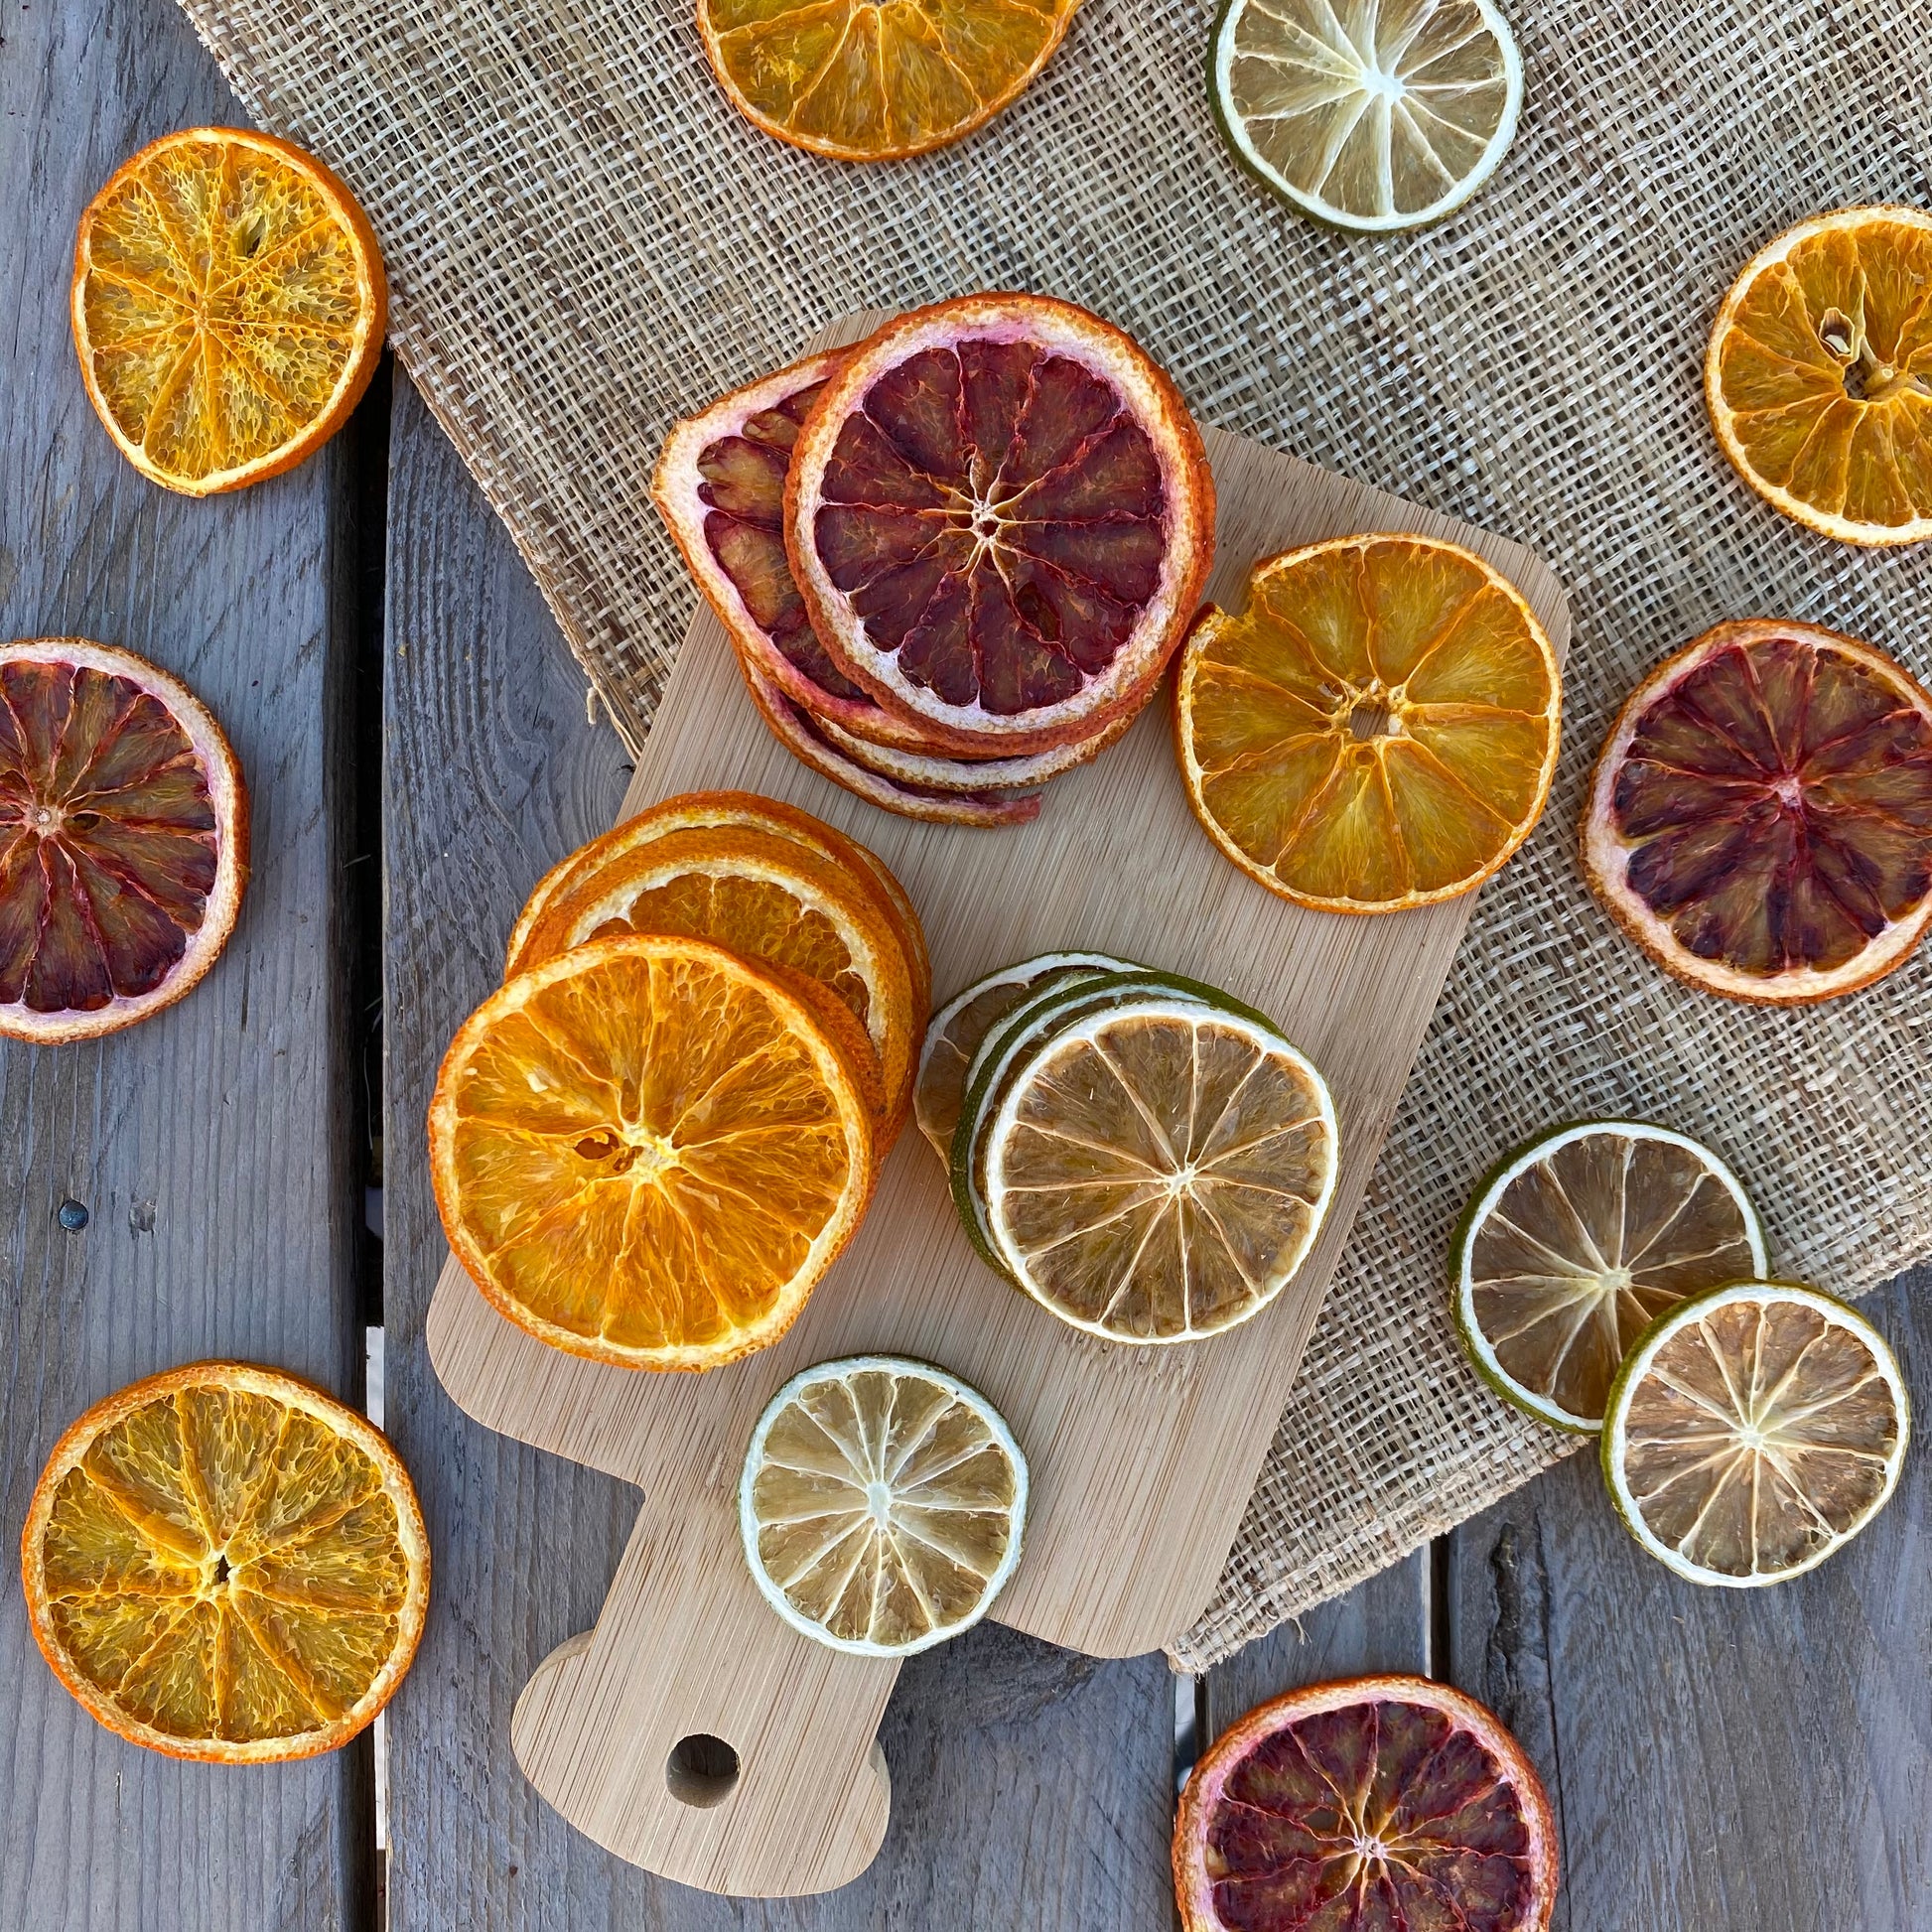 Rodajas de fruta deshidratada especial coctelería: naranja con corteza deshidratada, naranja sanguina deshidratada y lima deshidratada. Fruta 100% natural para tus preparaciones y bebidas